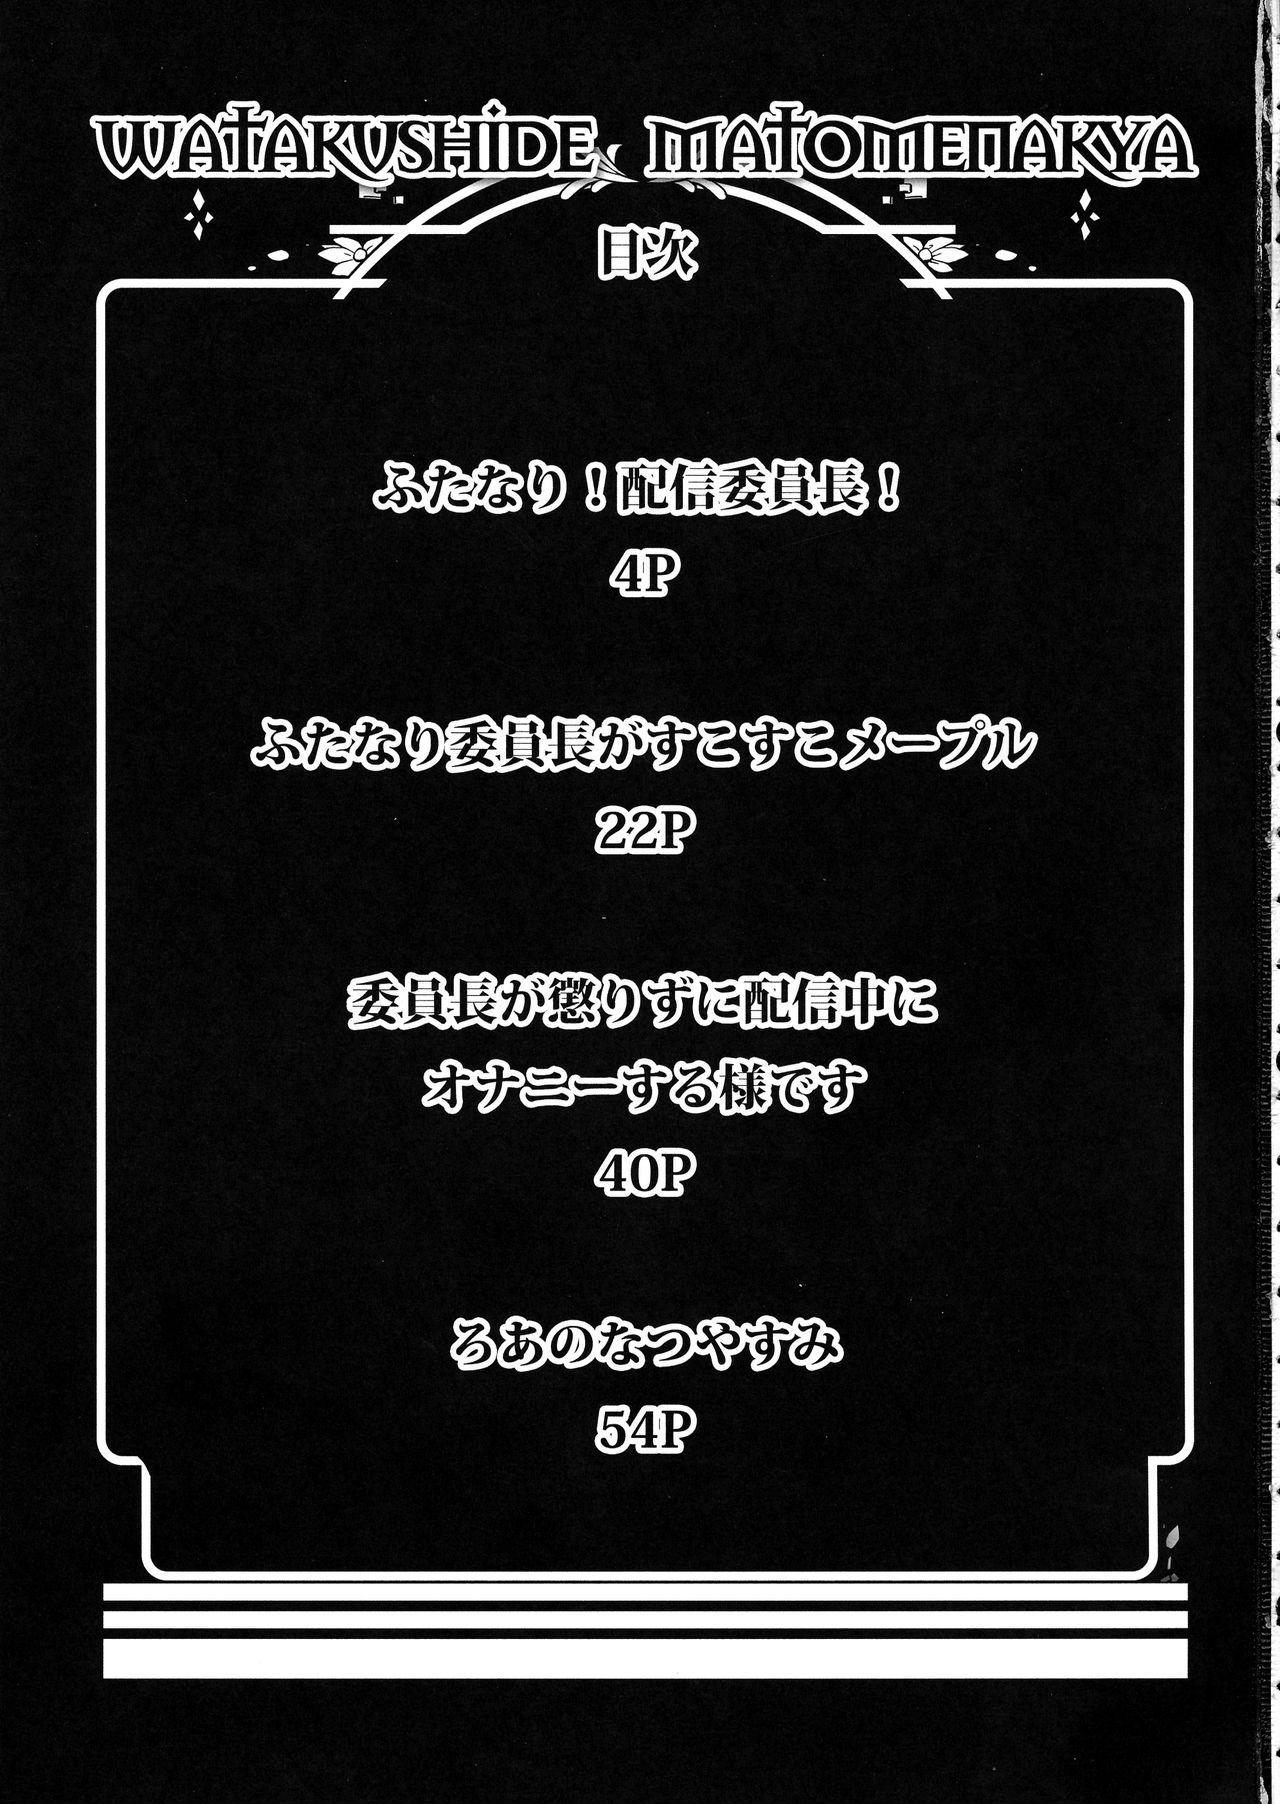 Novia Watakushide Matomenakya Indoor - Page 3